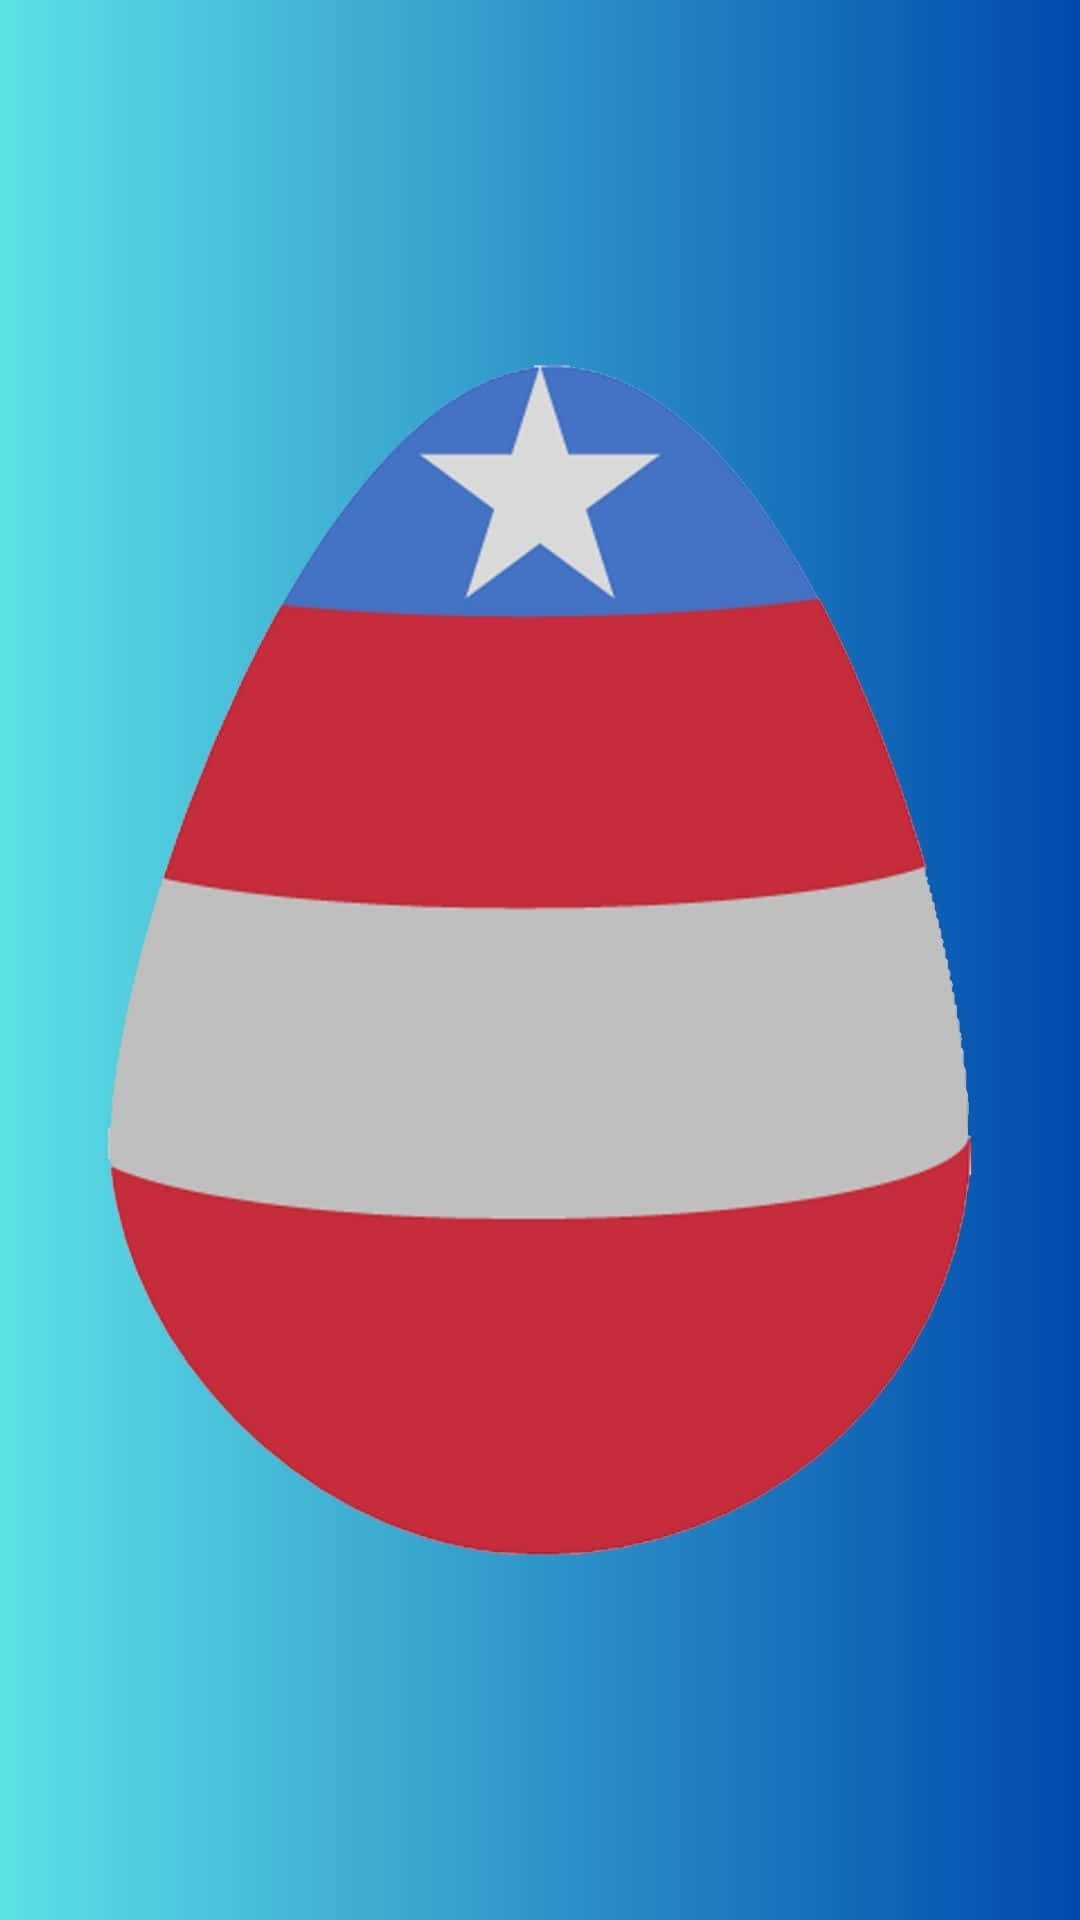 Easter Egg In Superhero Theme Background